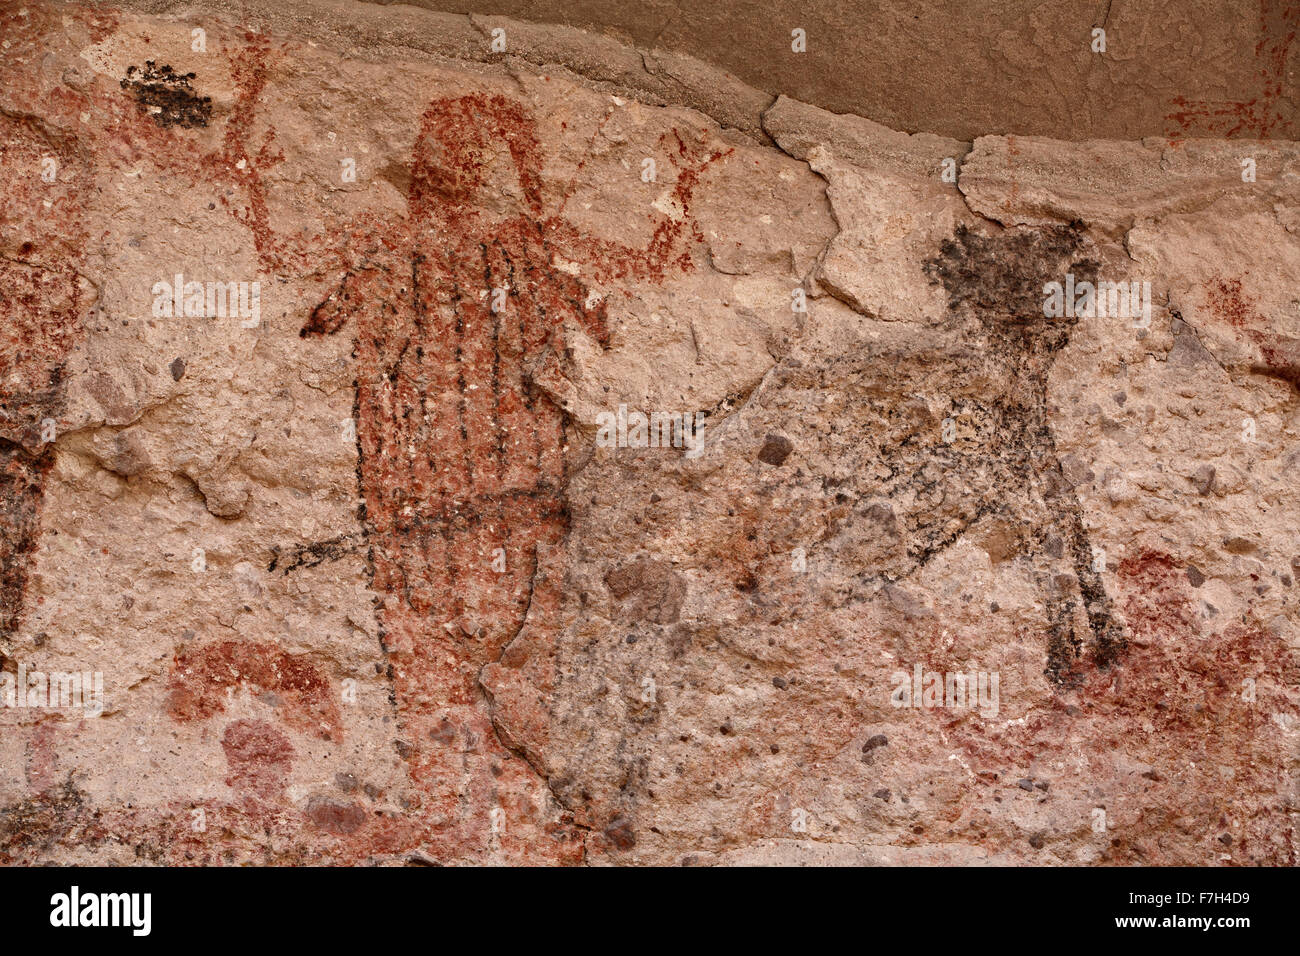 Pr5428-D. Pétroglyphes et peintures rupestres de Santa Marta, qui montrent des personnes, d'animaux (chevreuils, lapins, poissons, etc.). Baja, au Mexique. Banque D'Images